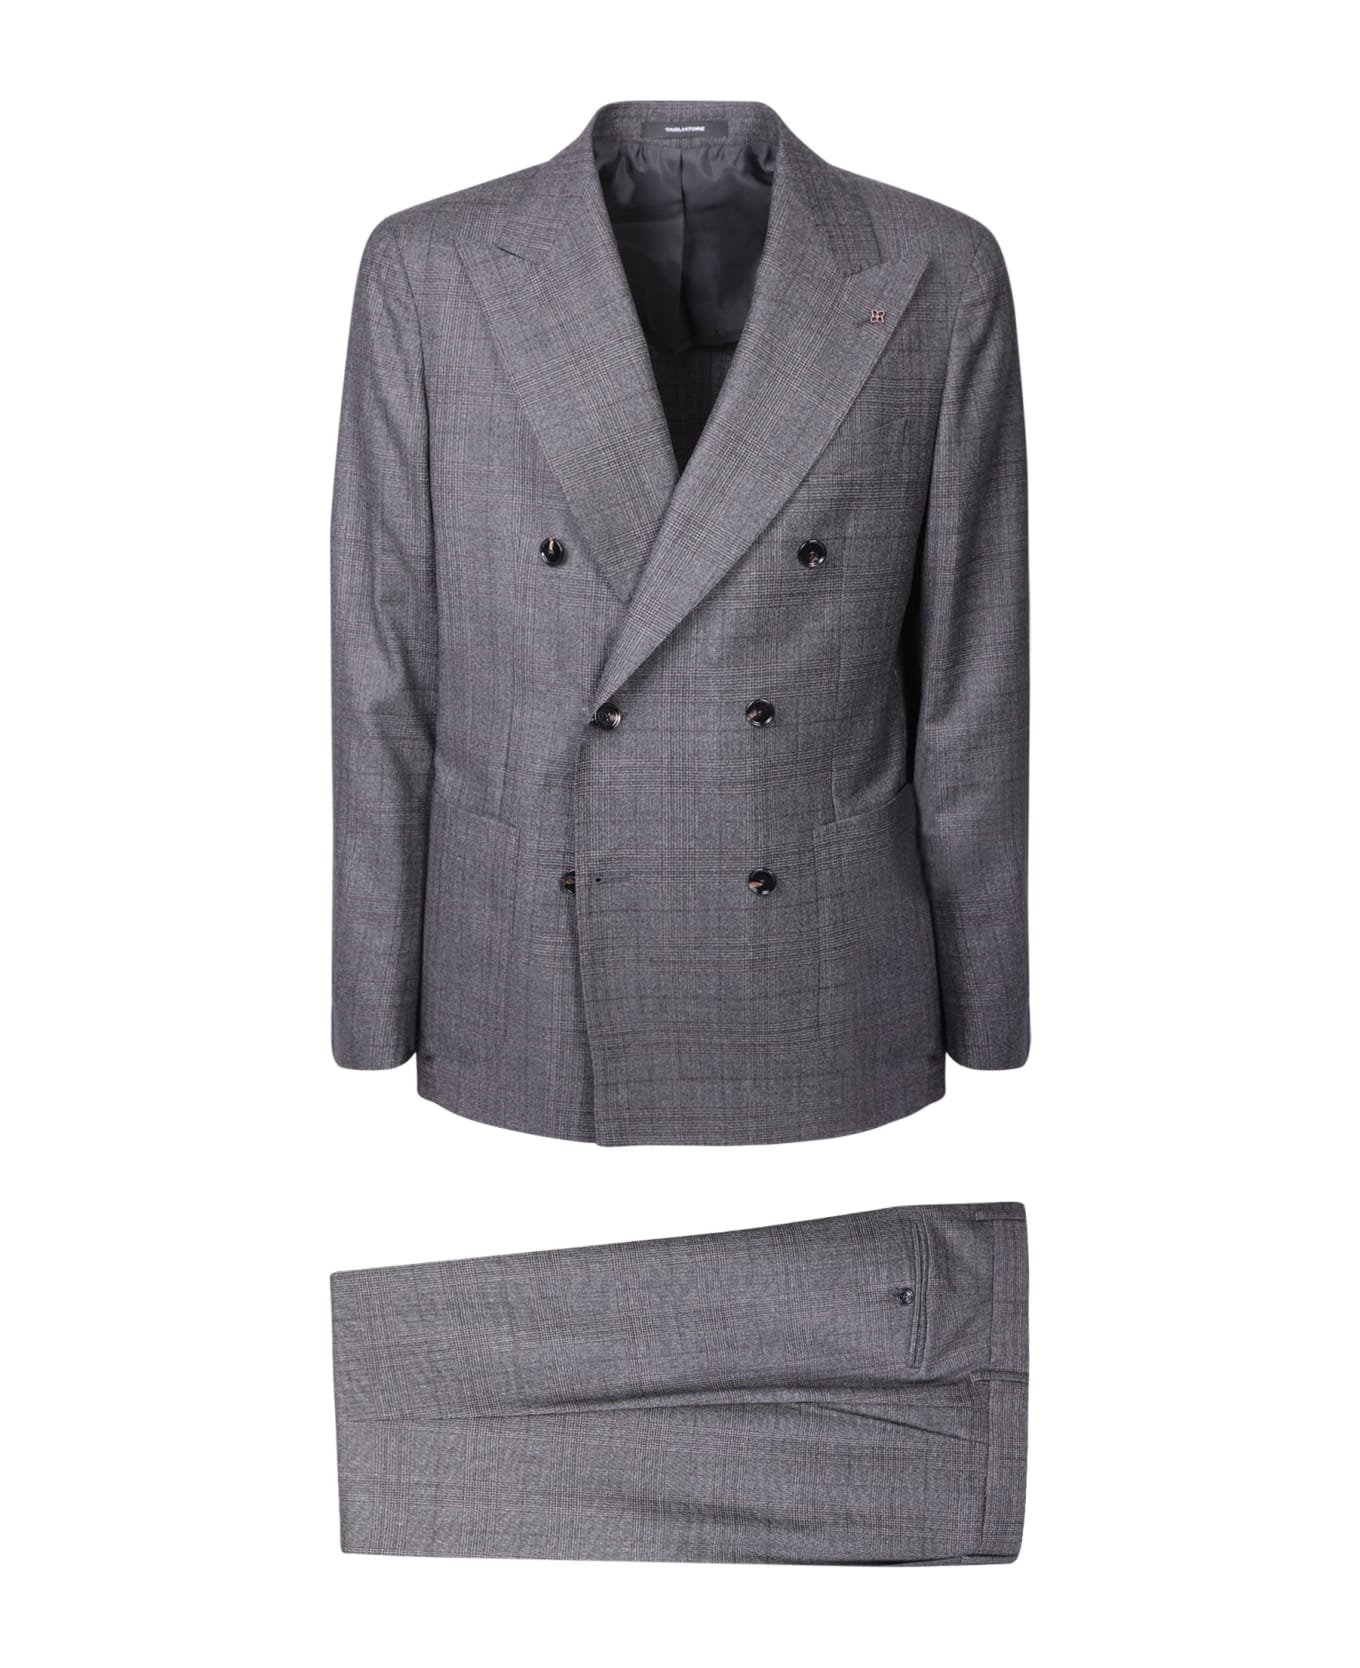 Tagliatore Vesuvio Grey Suit - Brown